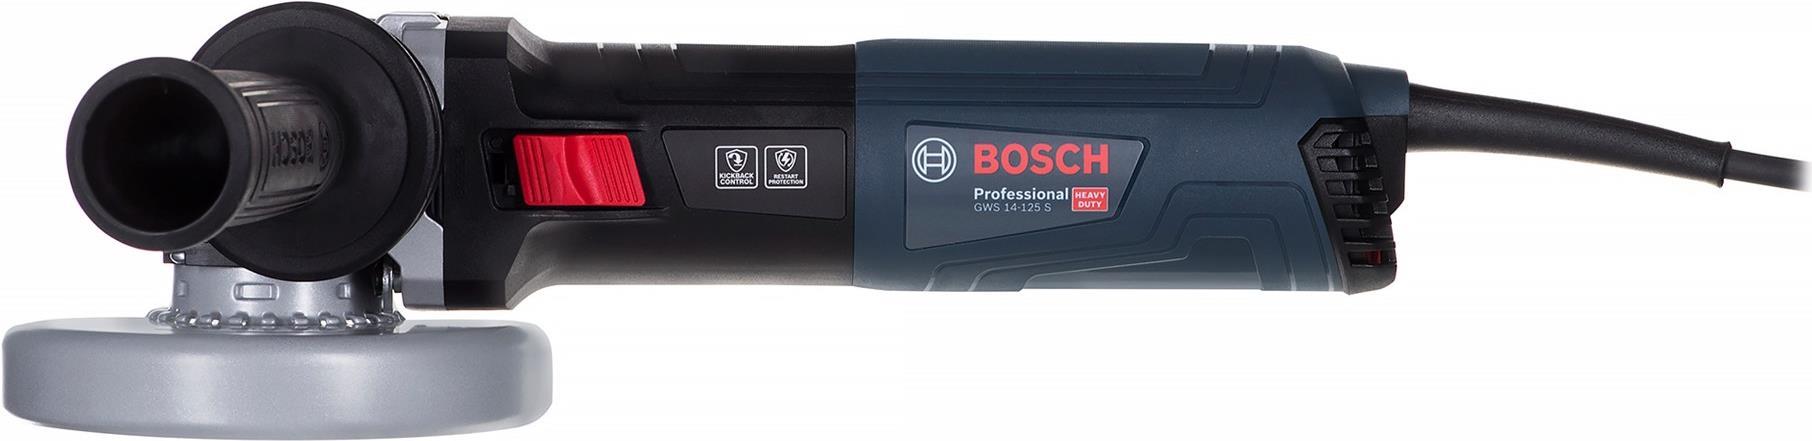 Bosch GWS Professional 14-125 S